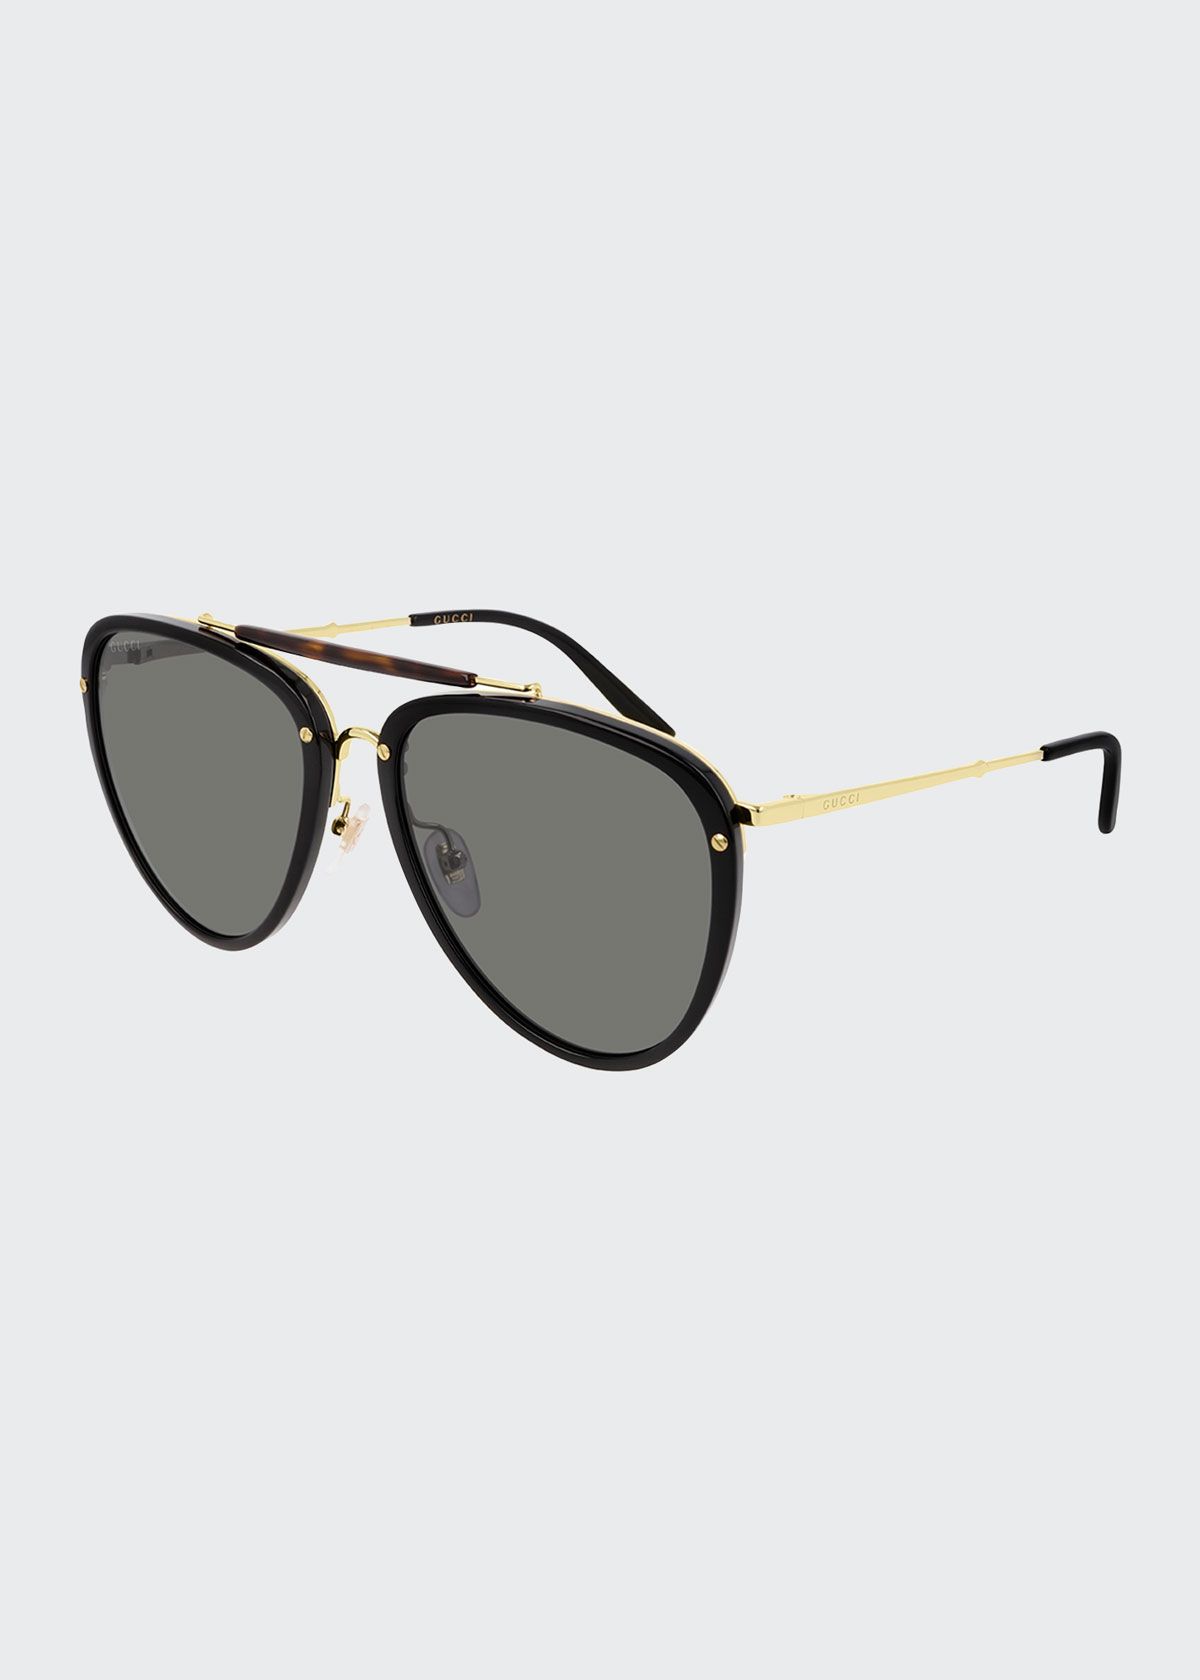 Men's Brow-Bar Acetate/Metal Aviator Sunglasses | Bergdorf Goodman